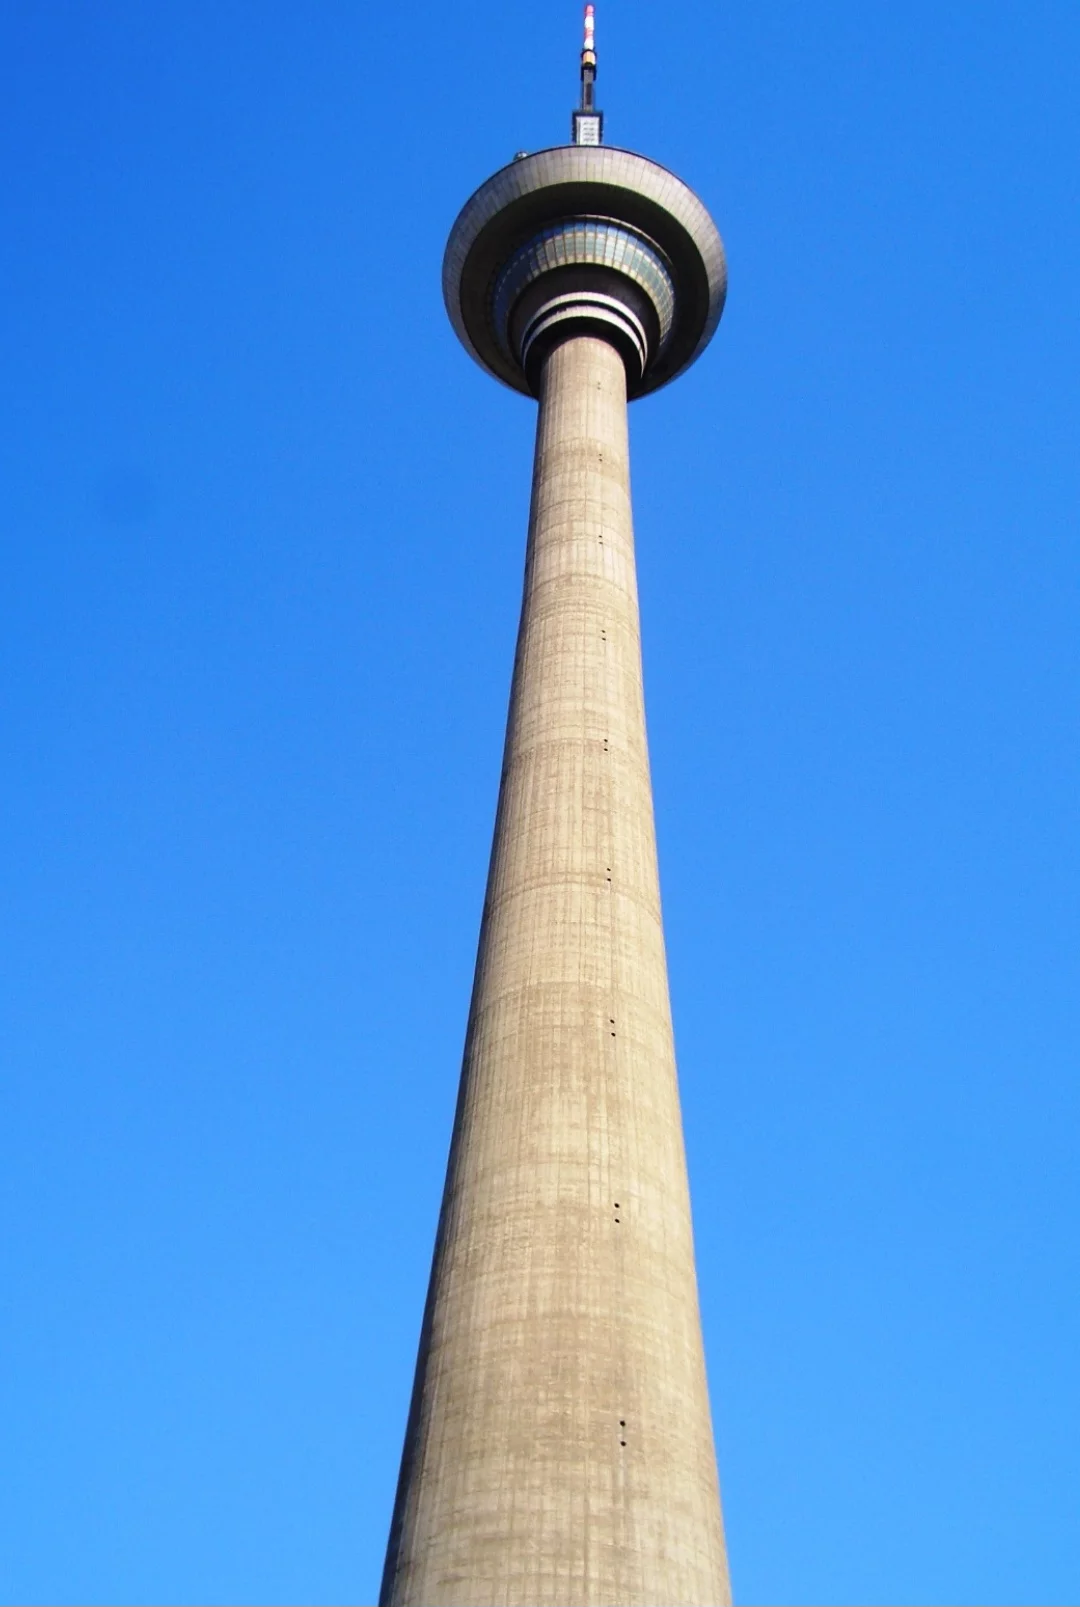 Tianjin Radio e TV Tower - 415 metros - China - Funciona desde 1991. Com vista panorâmica, ela oferece aos turistas uma bela contemplação do horizonte. Além de servir como torre de comunicação, ela conta com restaurantes e lojas de conveniência.